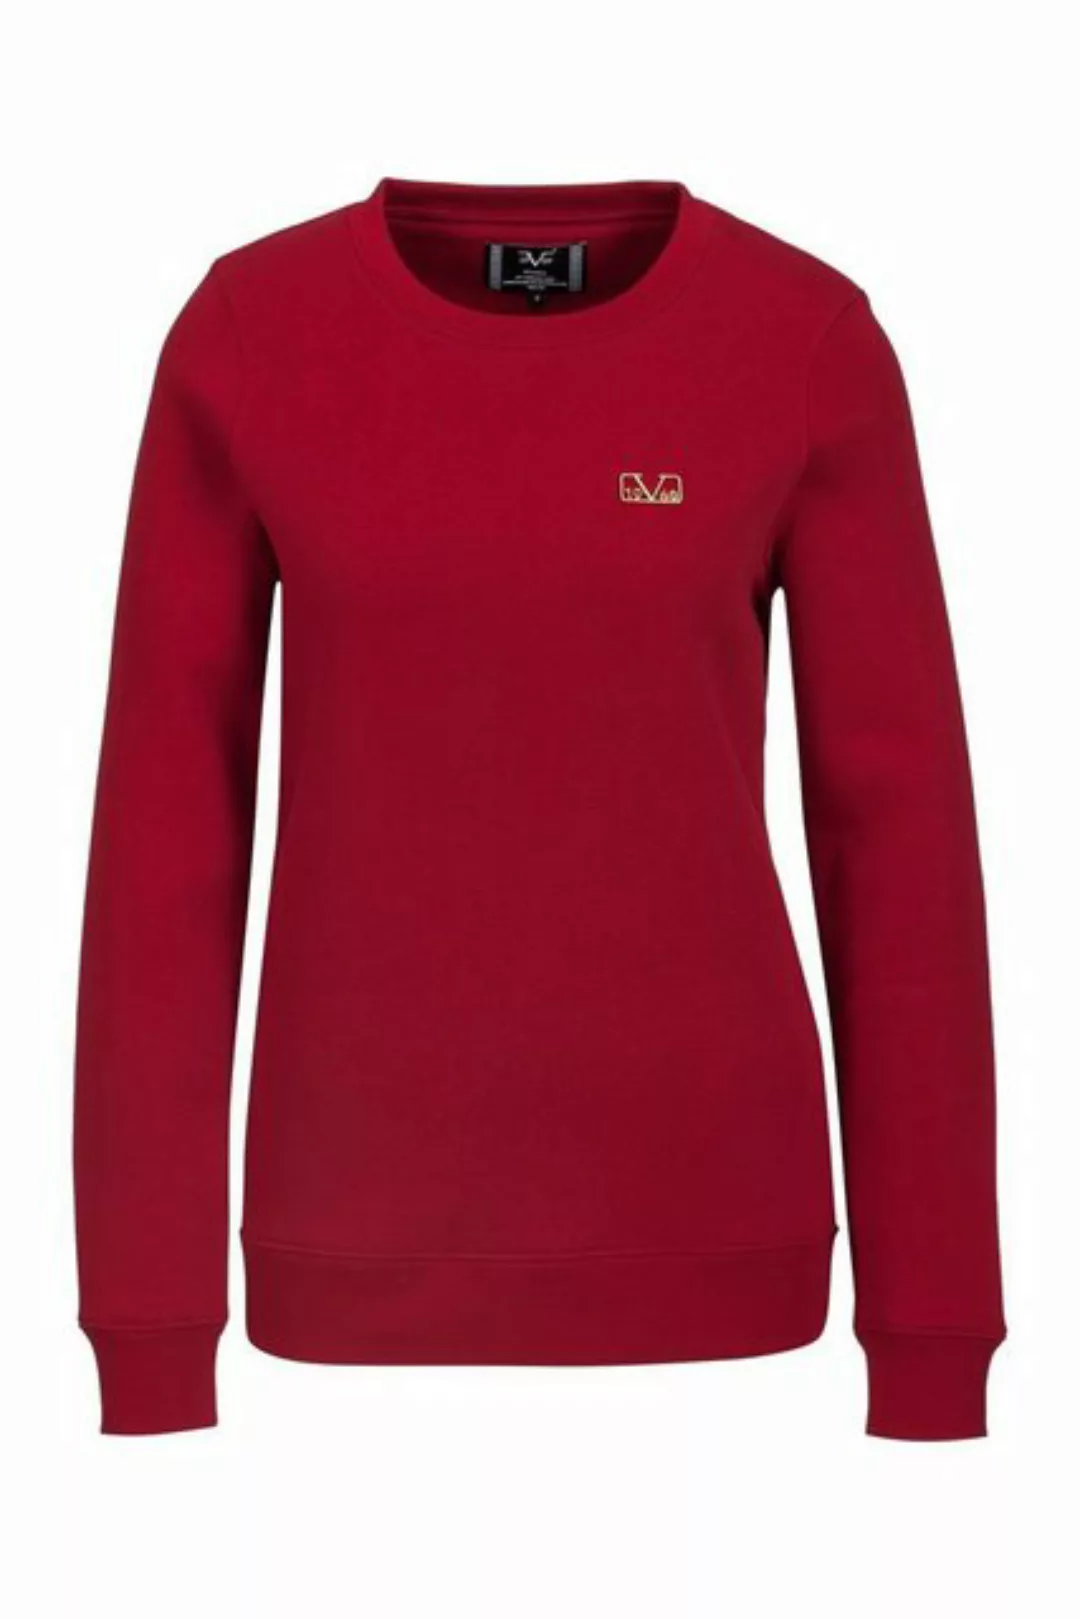 19V69 Italia by Versace Sweatshirt by Versace Sportivo SRL - Laura günstig online kaufen